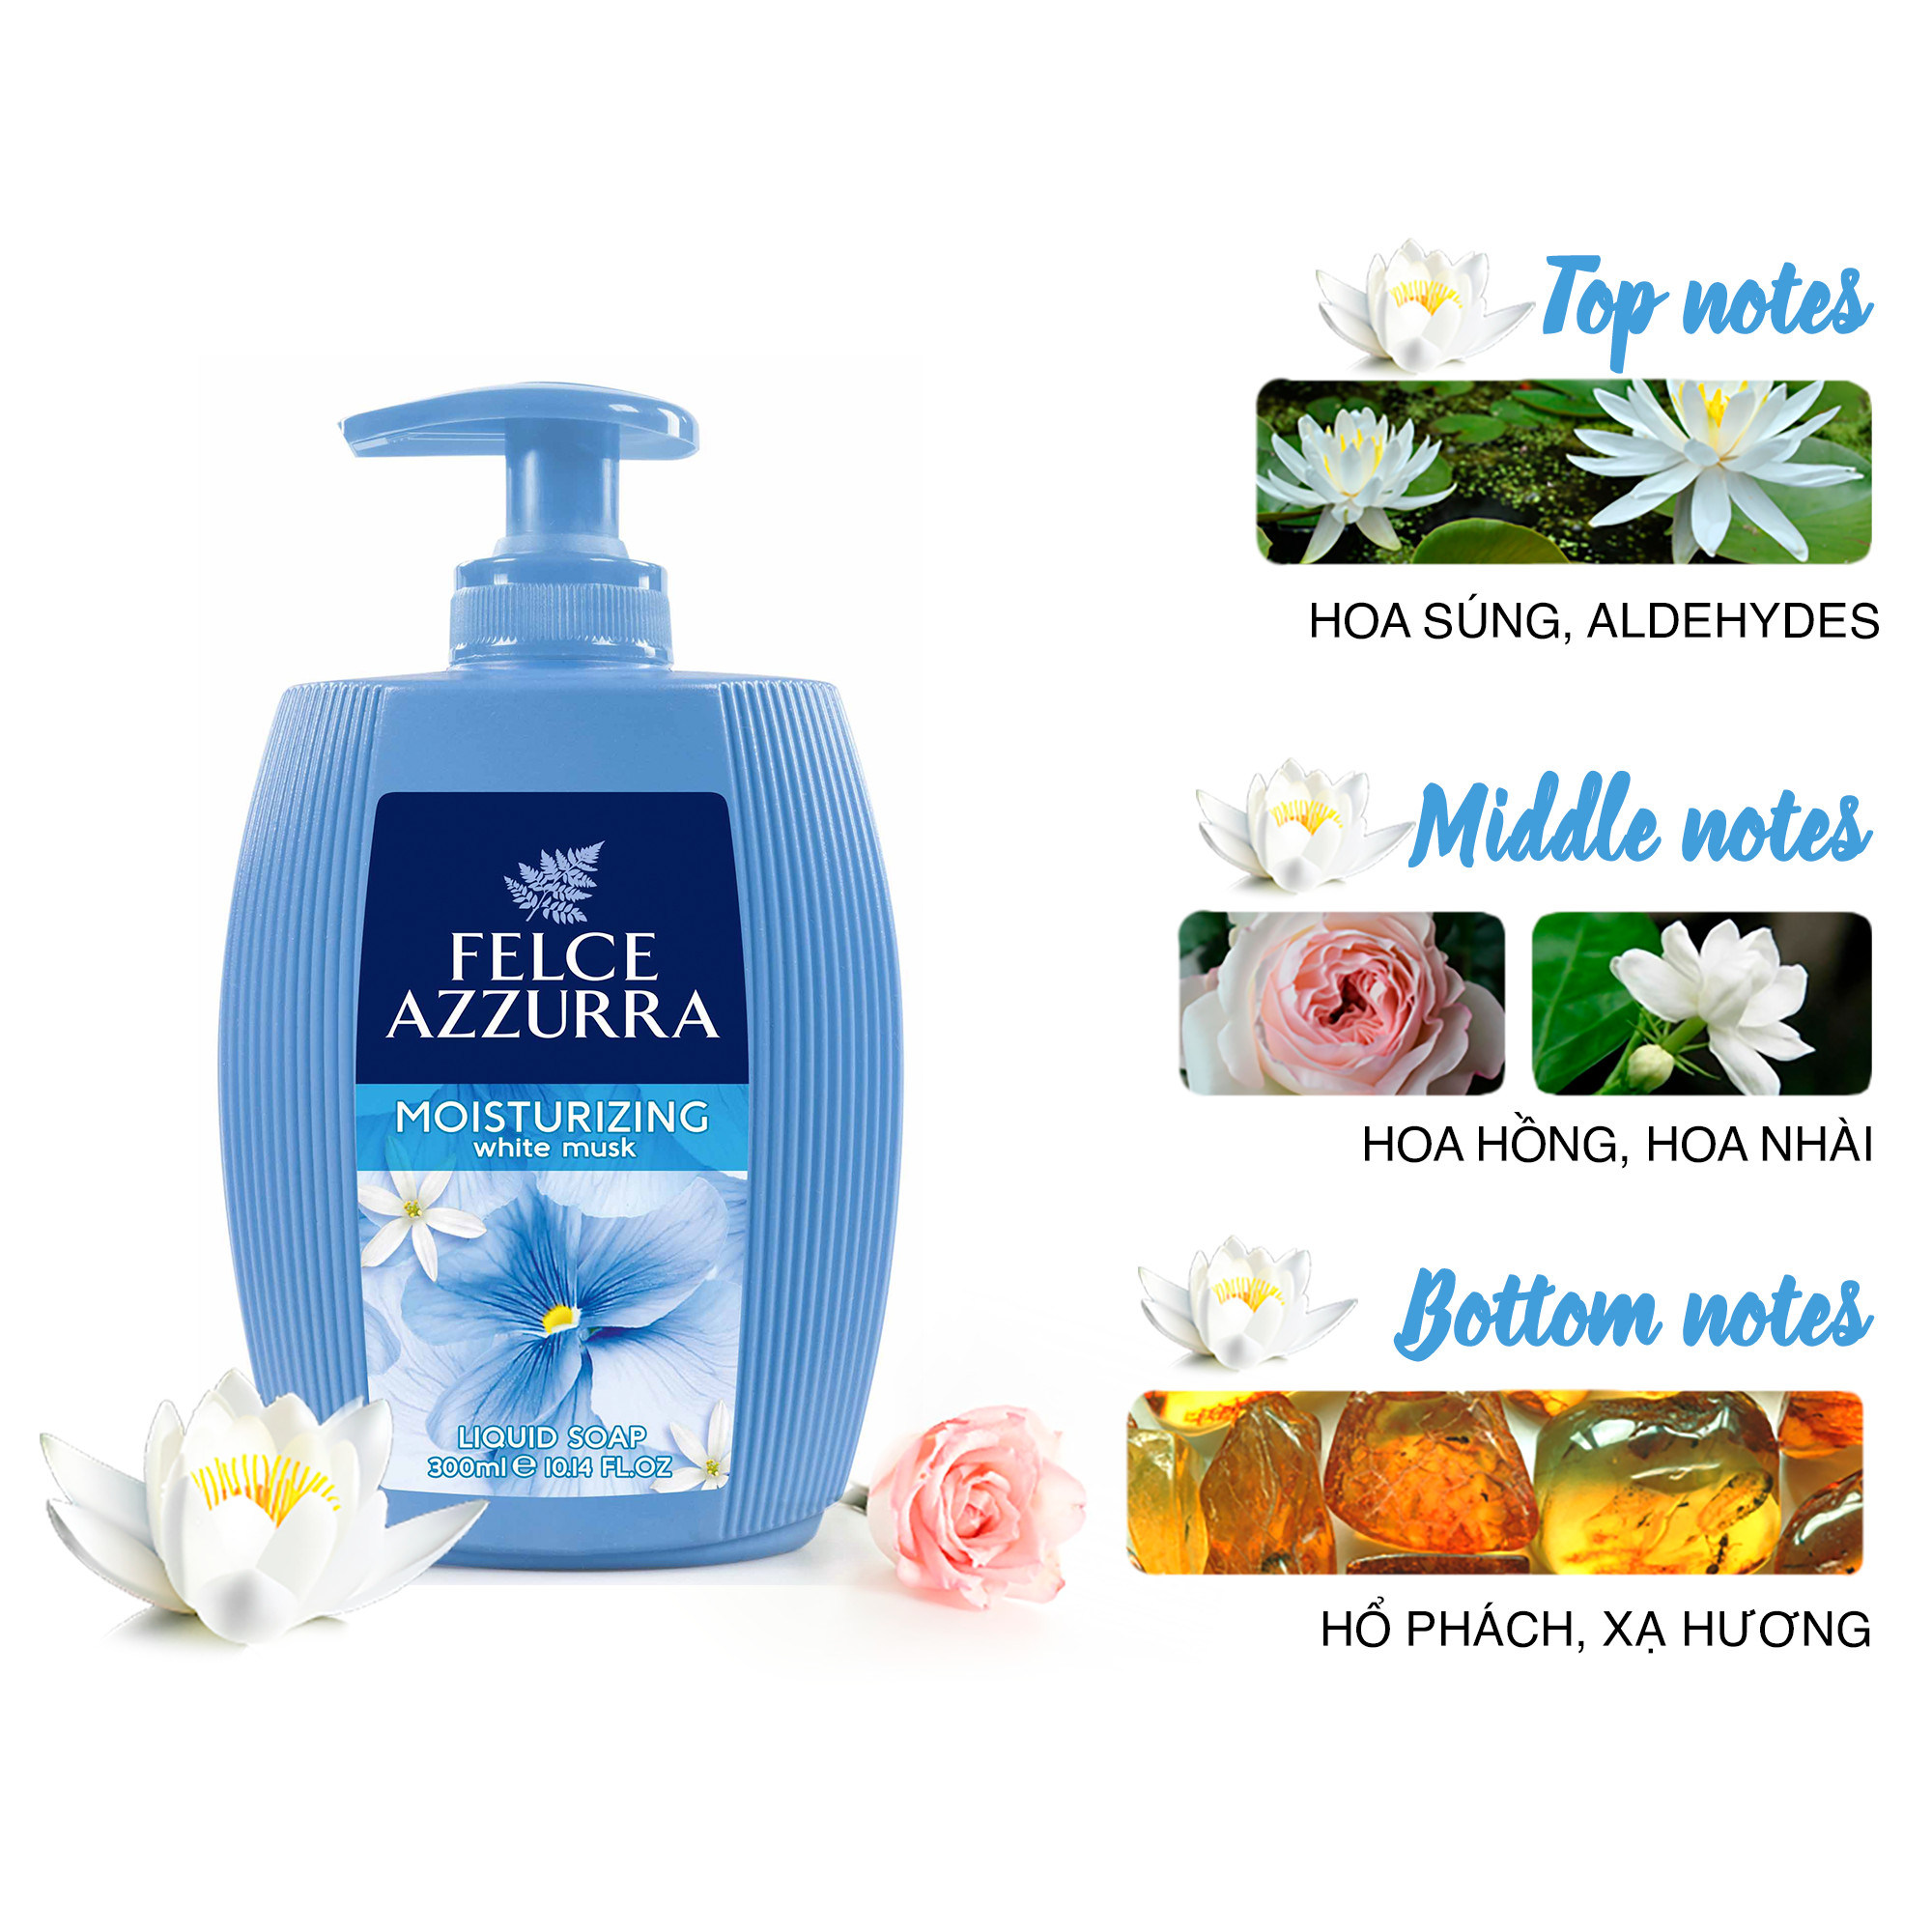 Sữa rửa tay hương nước hoa Ý xạ hương trắng Felce Azzurra Moisturizing 300ml